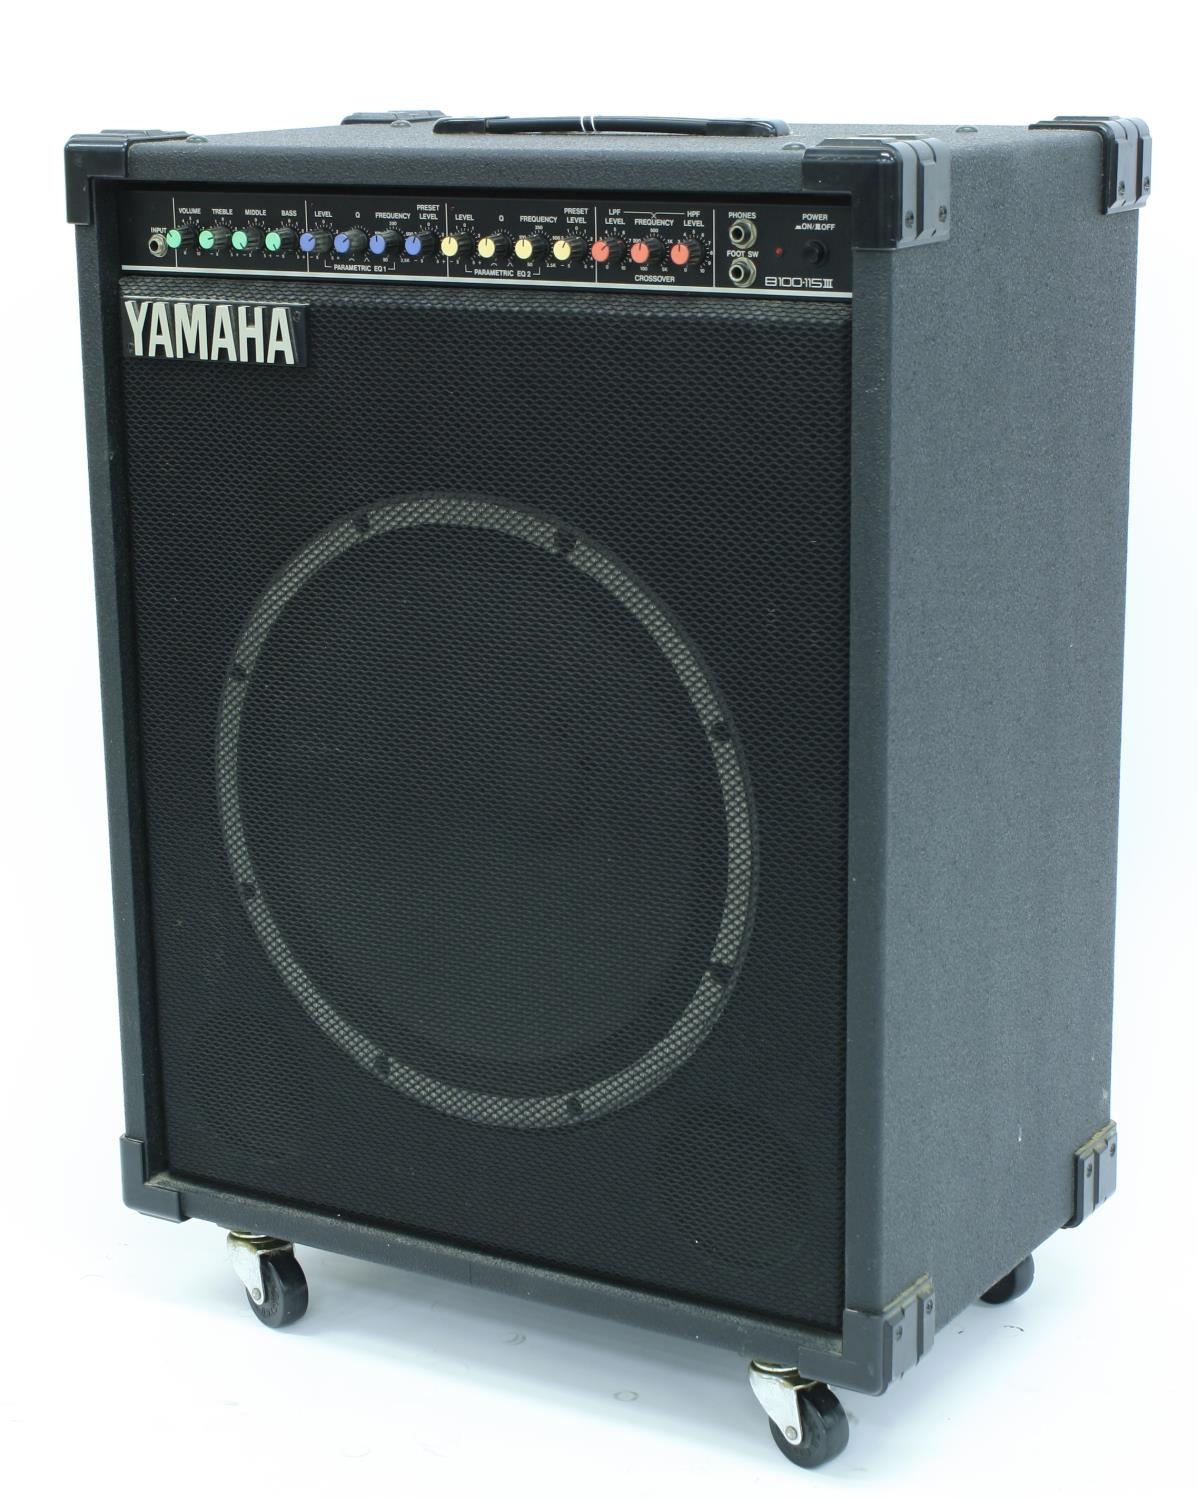 Yamaha B100-115 III bass guitar amplifier, made in Japan, ser. no. OP01030